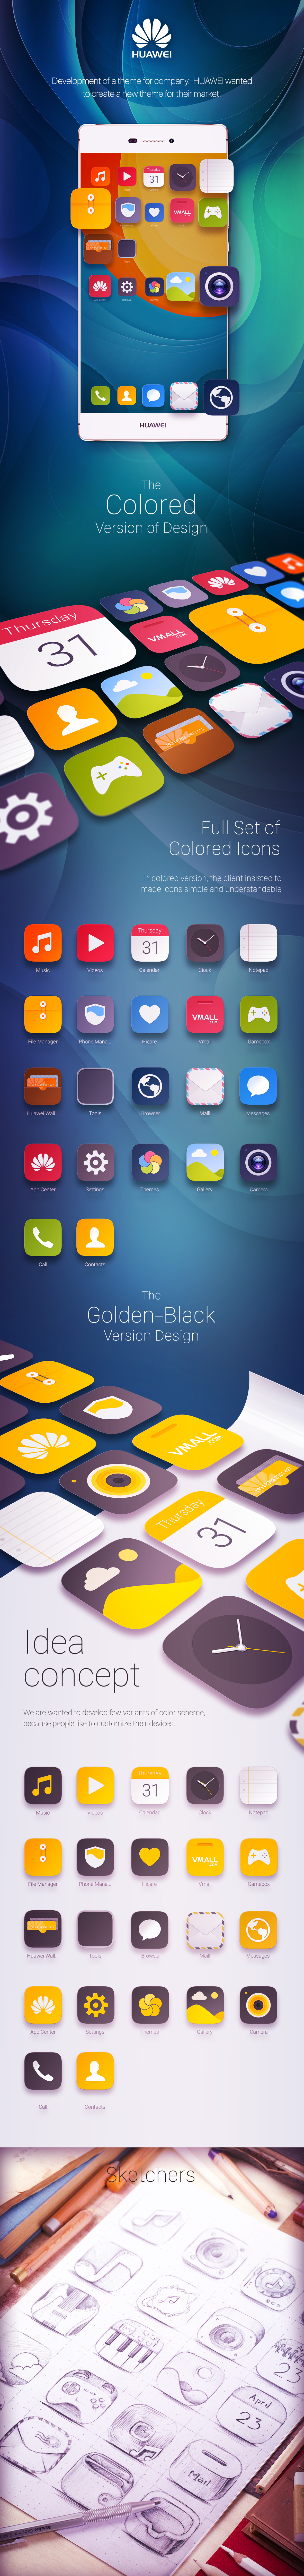 huawei rondesign Theme app Icon icons